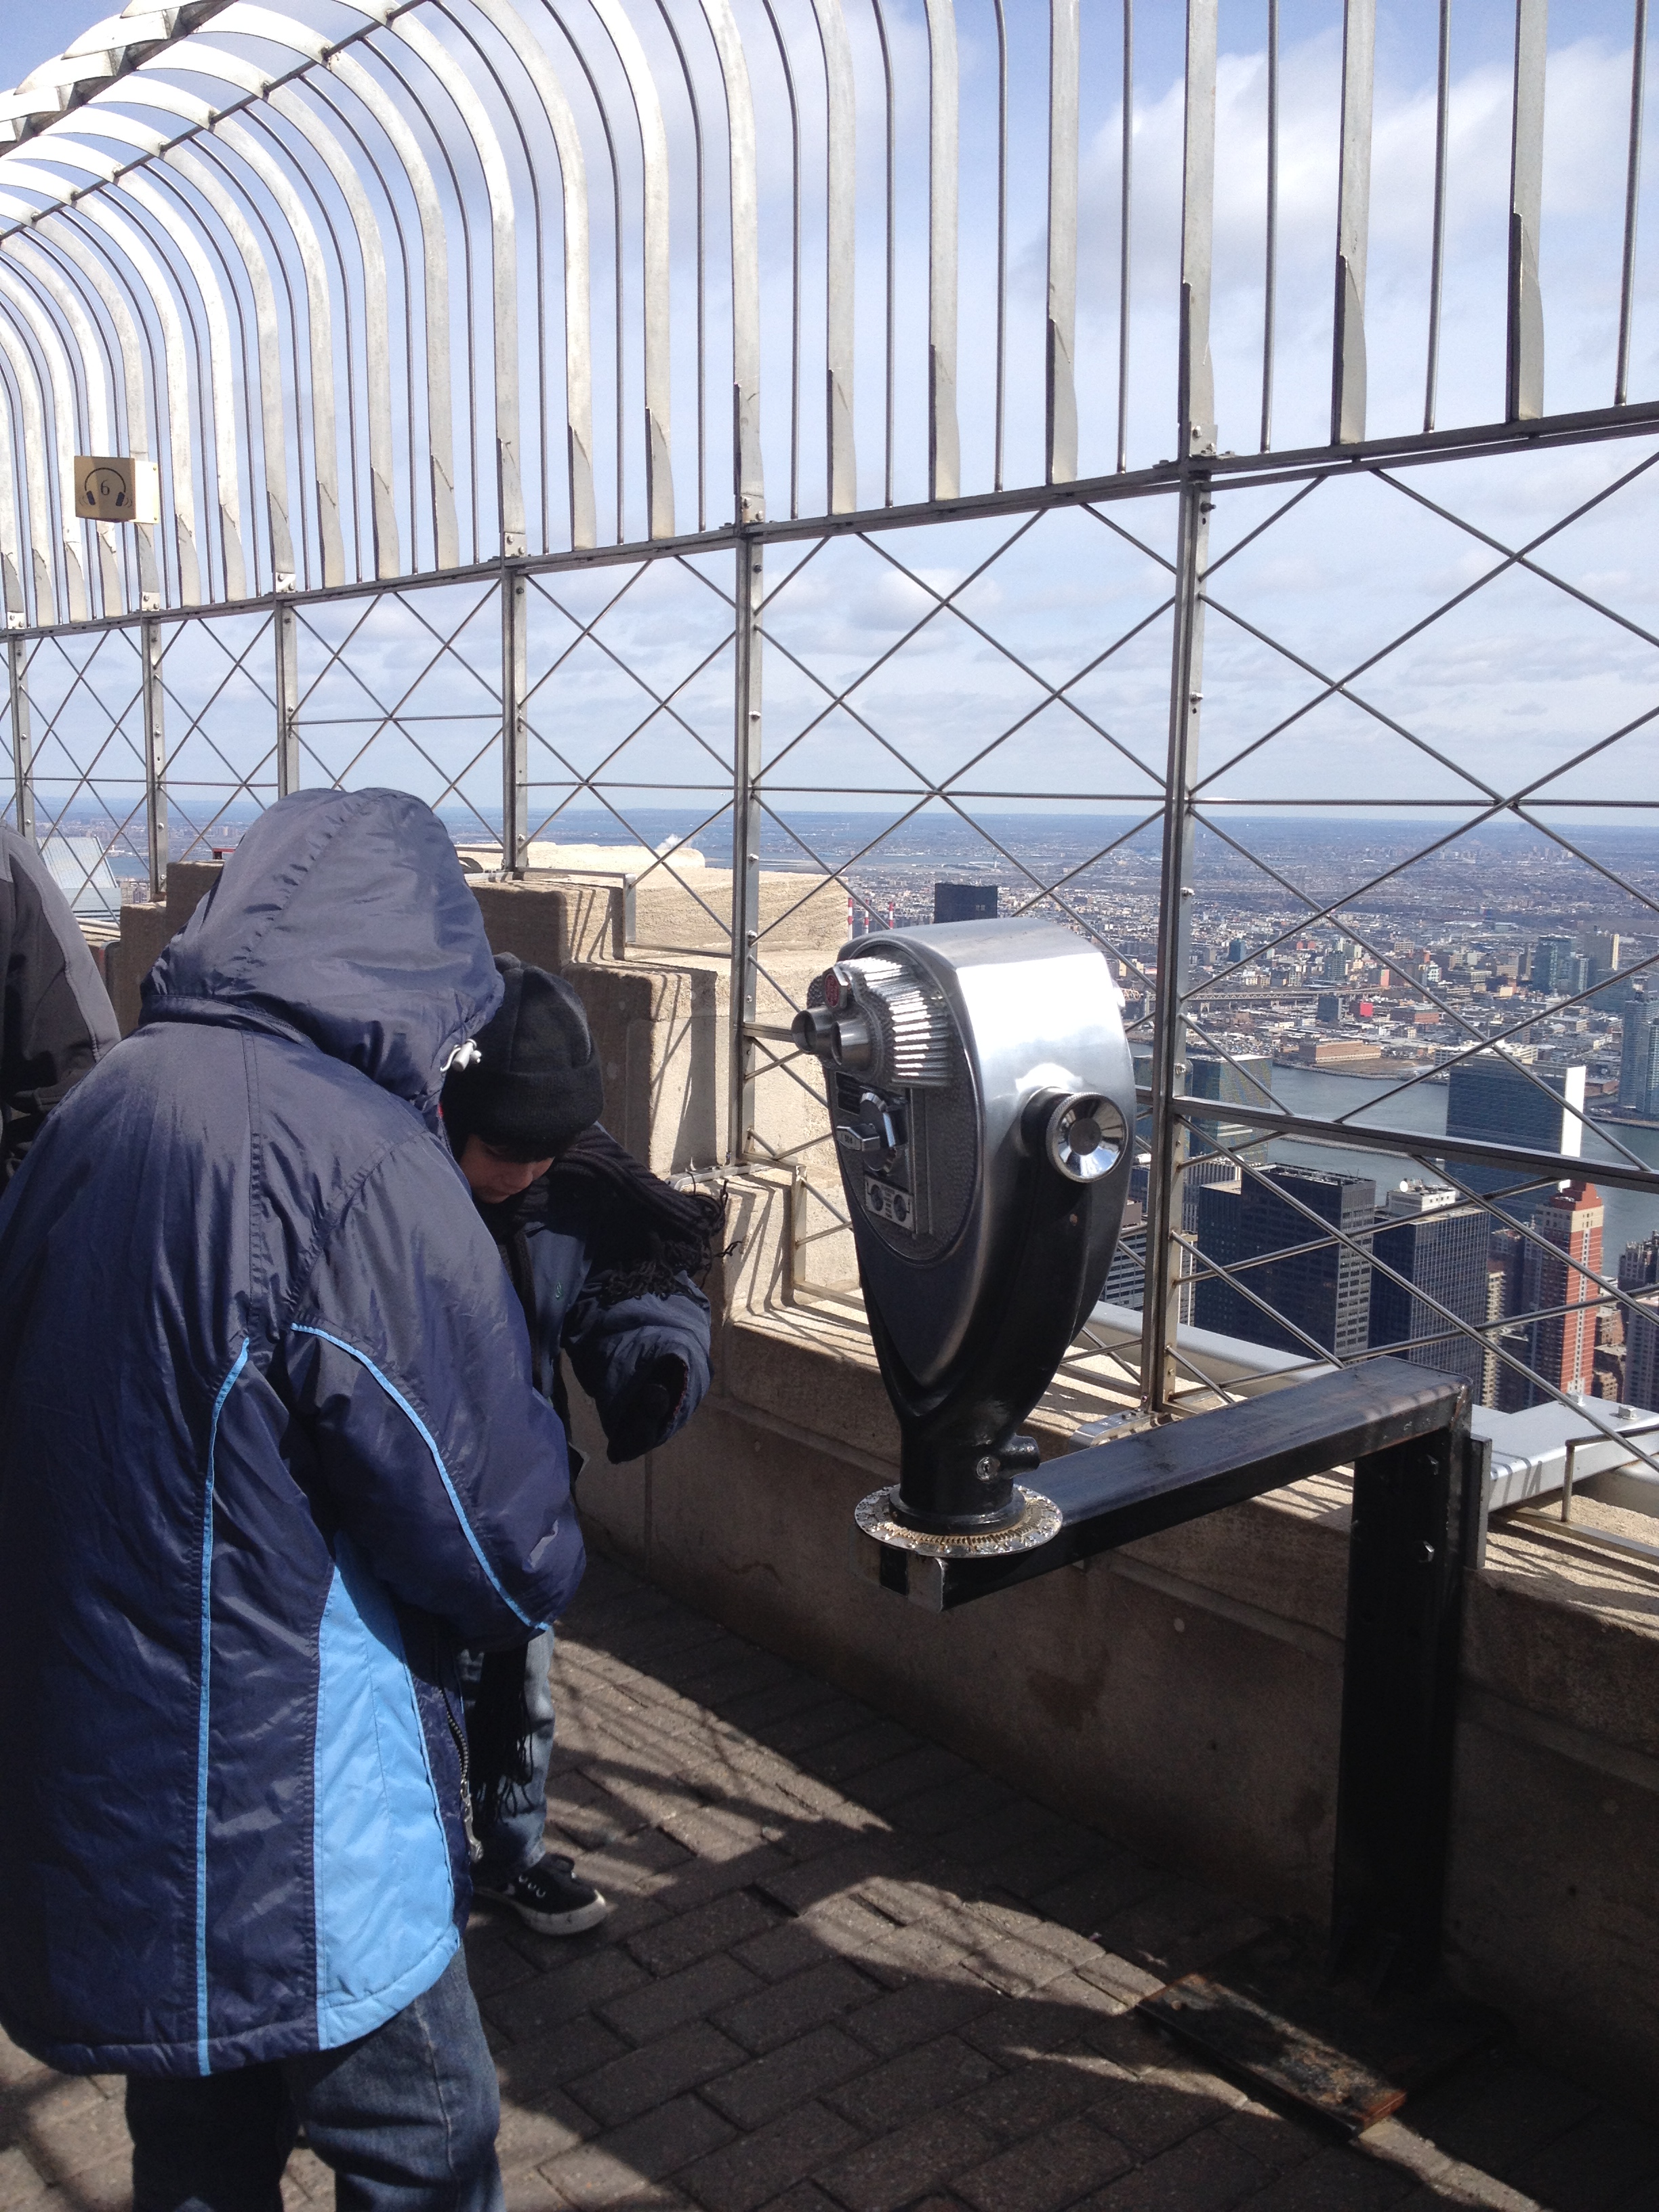 El edificio Empire State, que increíble la vista. Ese día había muchísimo frío. 